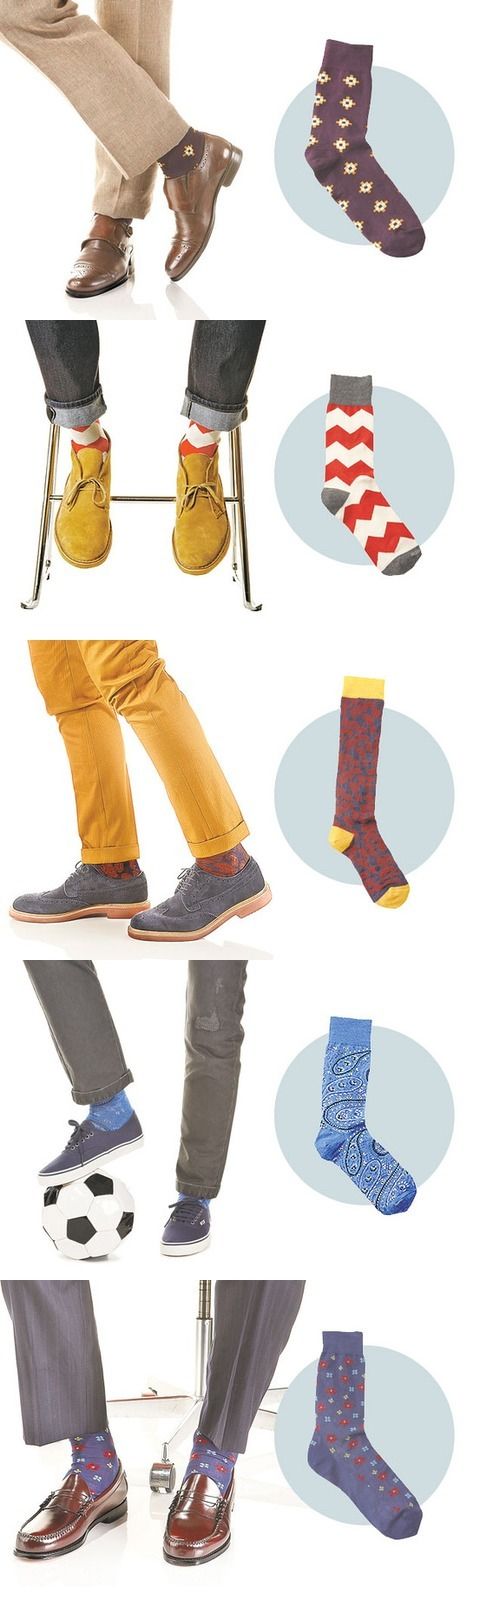 цветные мужские носки 14